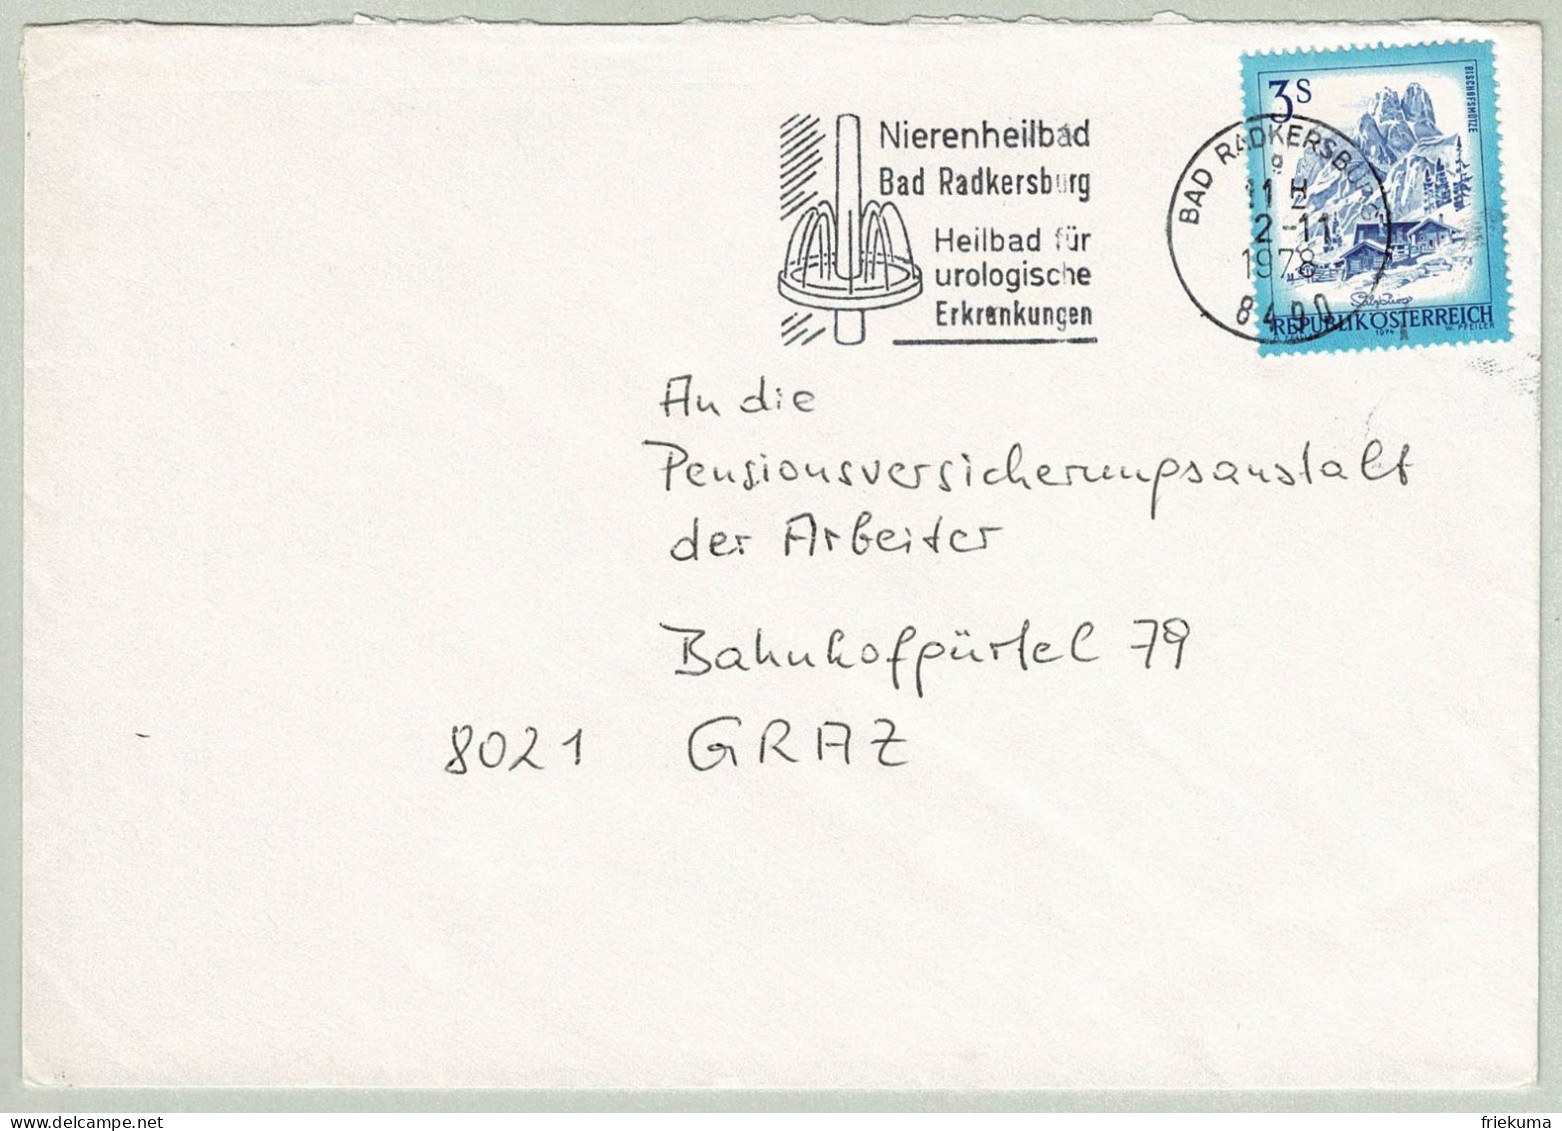 Oesterreich / Austria 1978, Brief Bad Radkersburg - Graz, Nierenheilbad, Urologische Erkrankungen - Hydrotherapy